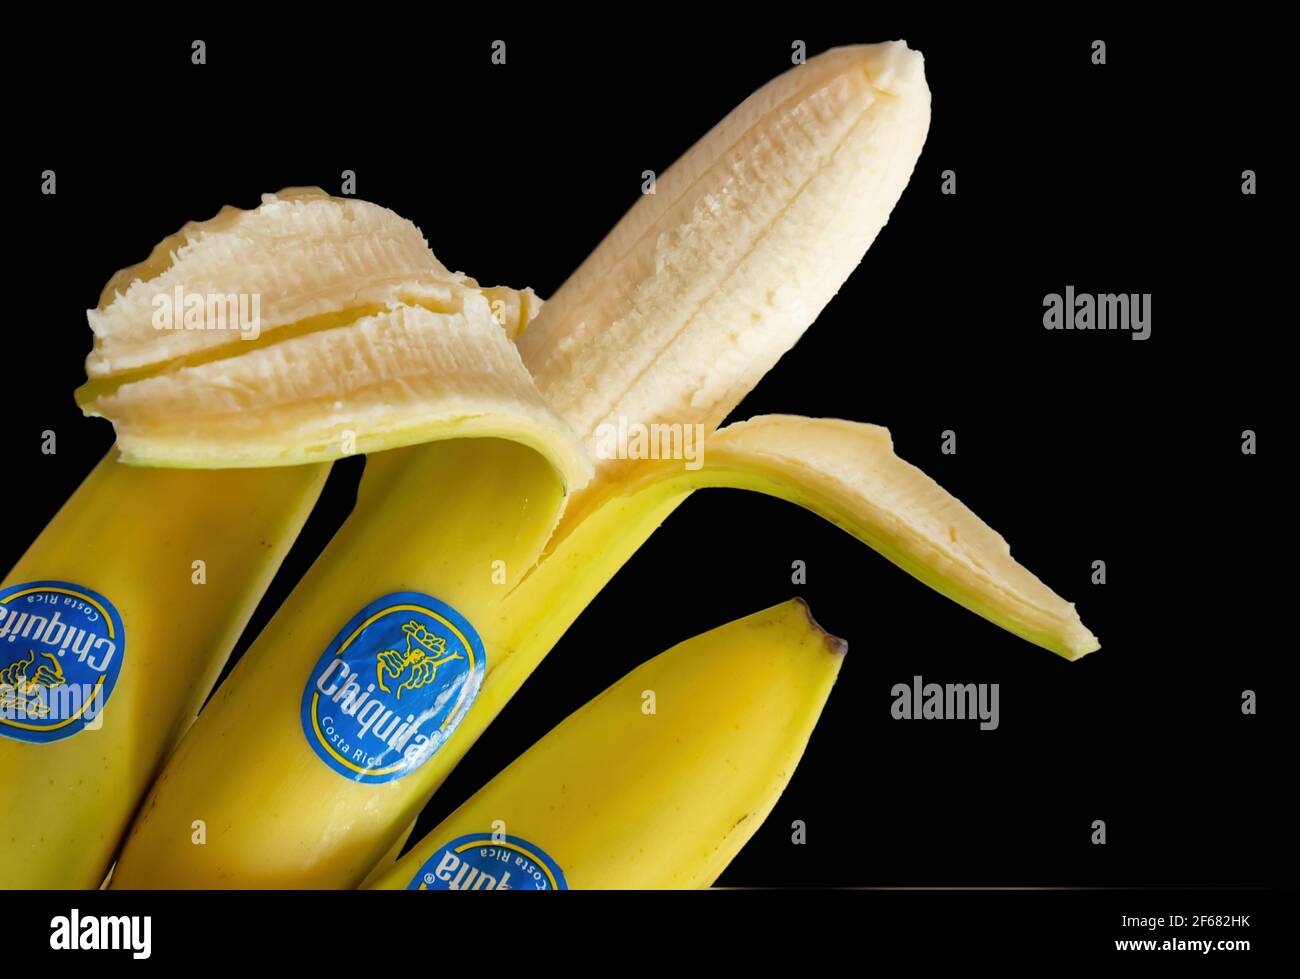 Plátanos maduros con etiqueta aislada sobre fondo negro Foto de stock